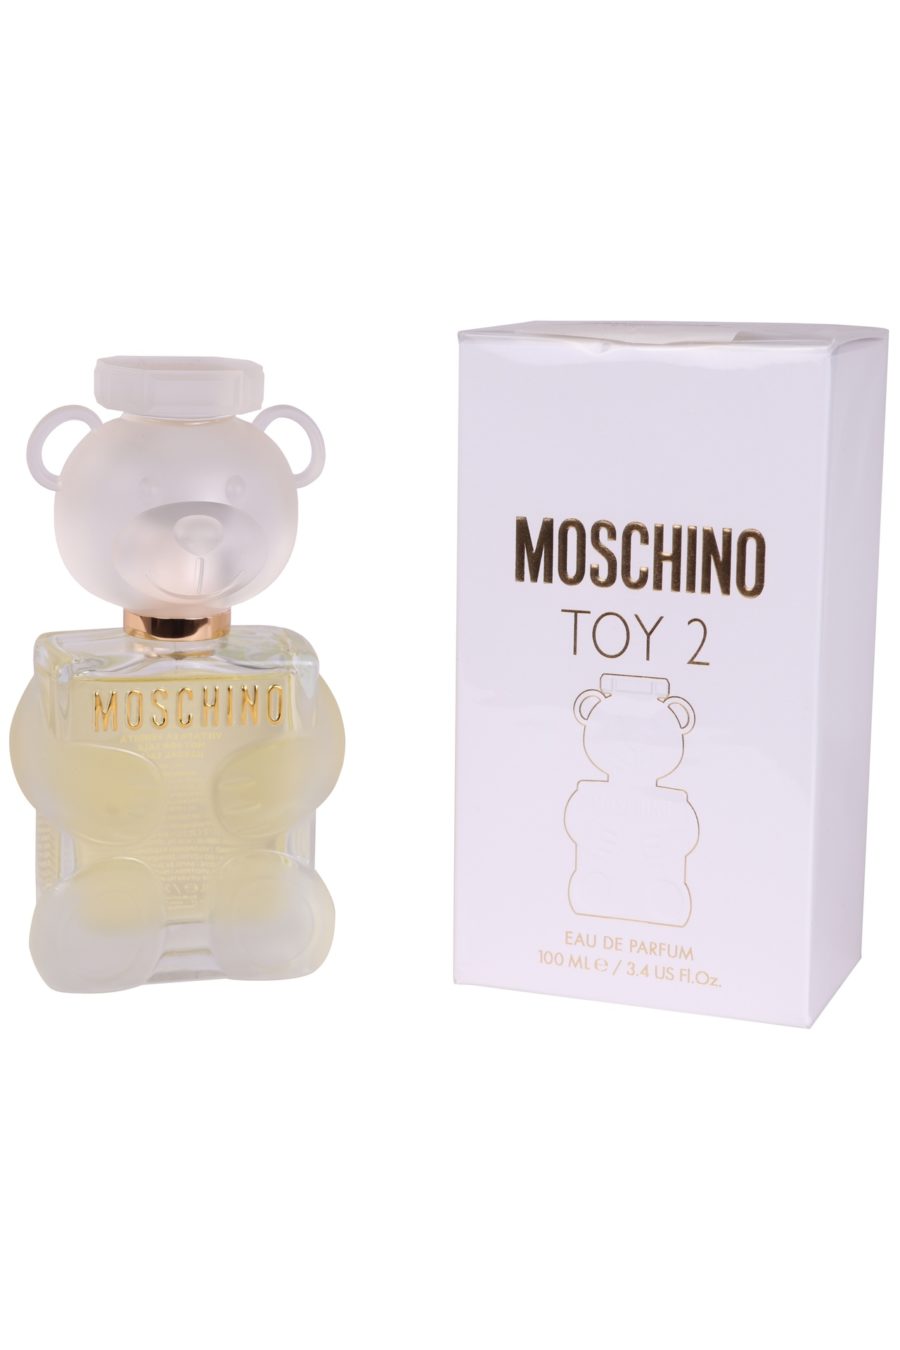 Parfüm Moschino Toy 2 100 ml - e3d70ed752b571903737fd1862bd4df4873b6843c3